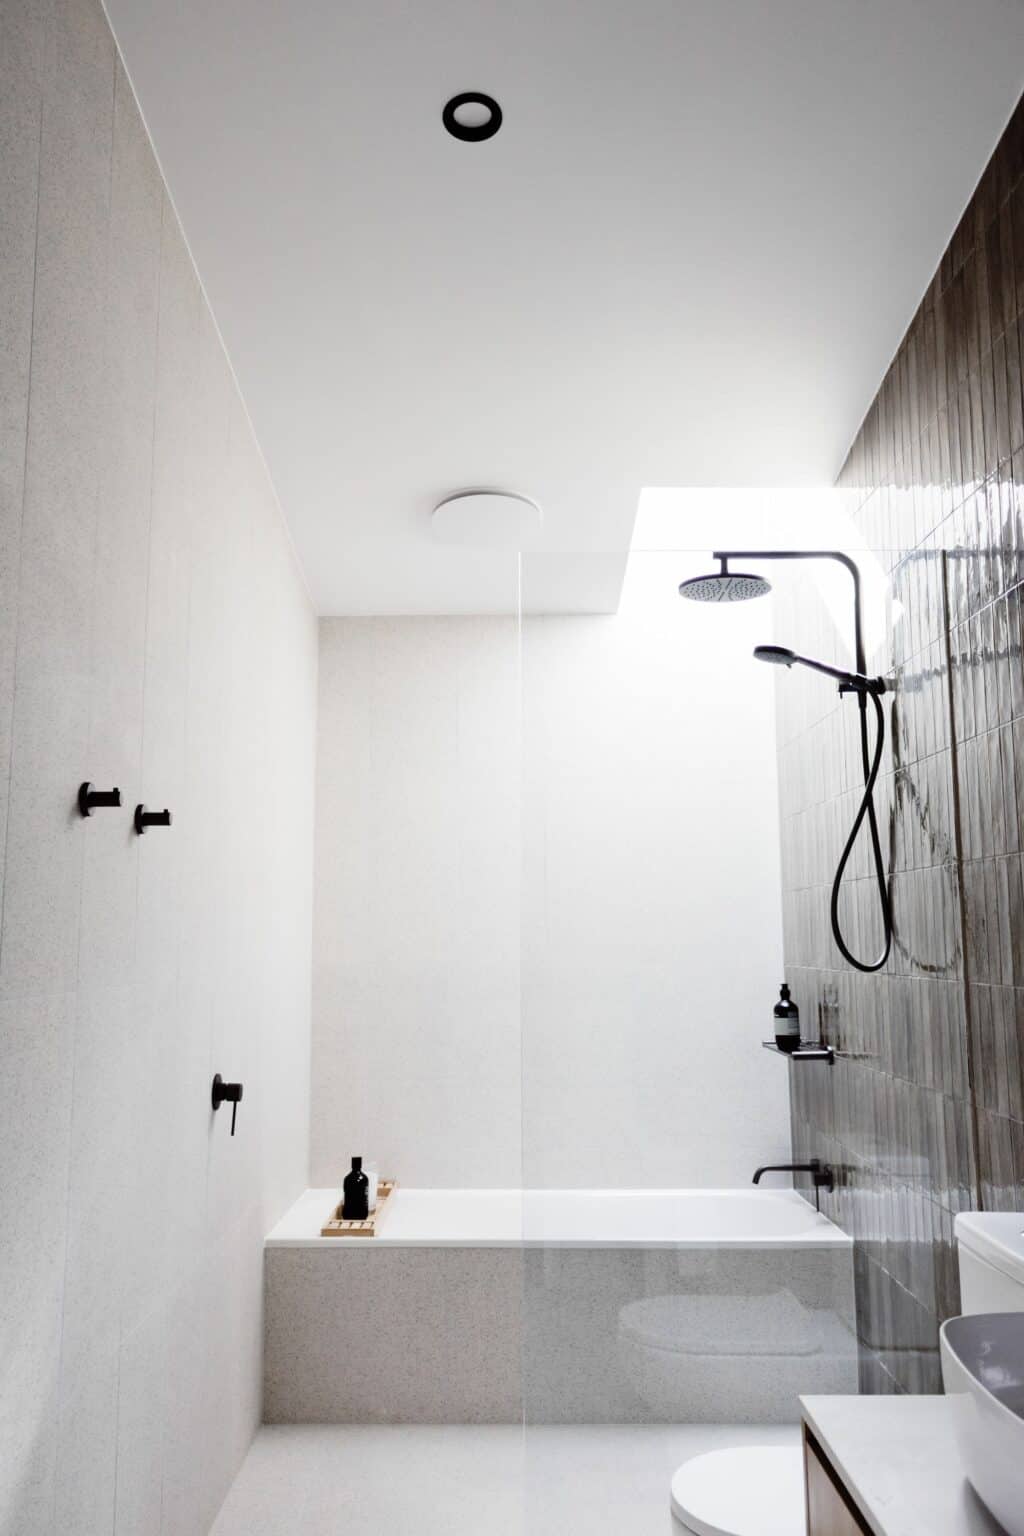 Roam Merrijig - luxury accommodation Merrijig - luxury accommodation Mount Buller - luxury bathroom